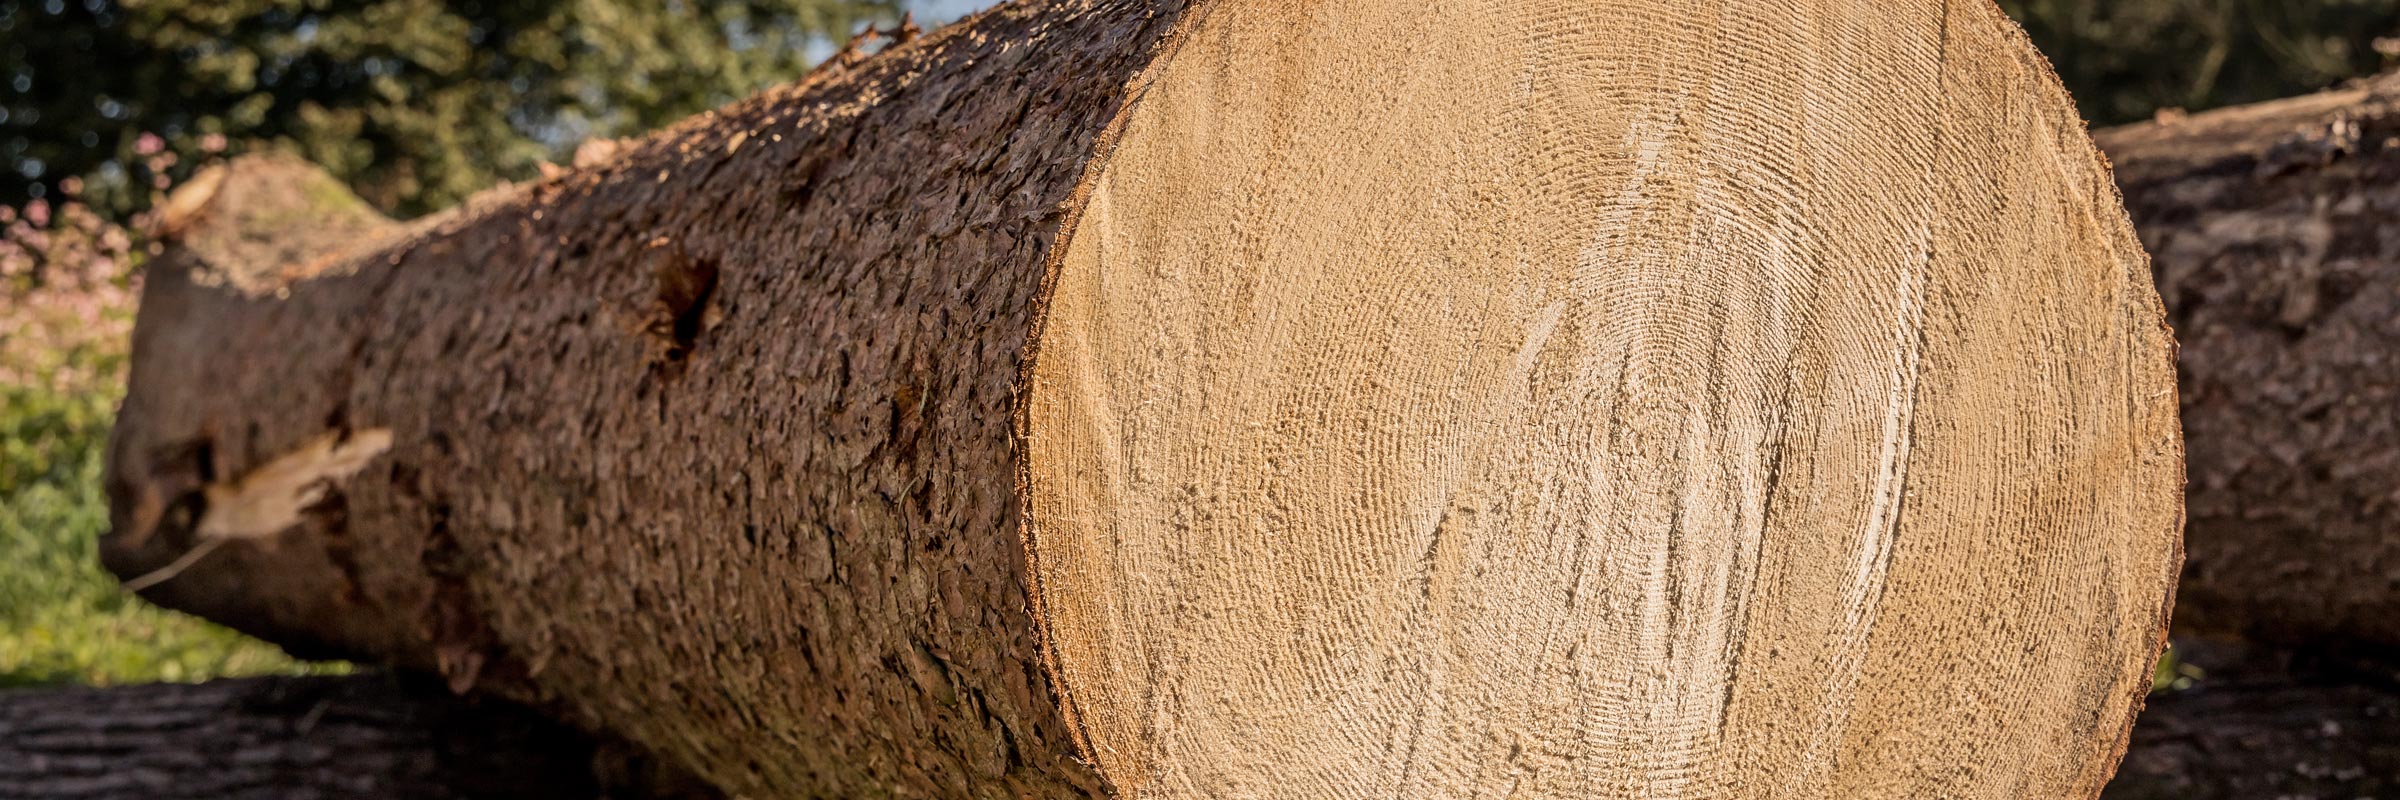 Hirschmann-Holz Gnas Steiermark Rundholz verkaufen Schnittholz kaufen Kantholz Brennholz Hackschnitzel Furniere Lohntrocknung Transporte Holzschlägerungen